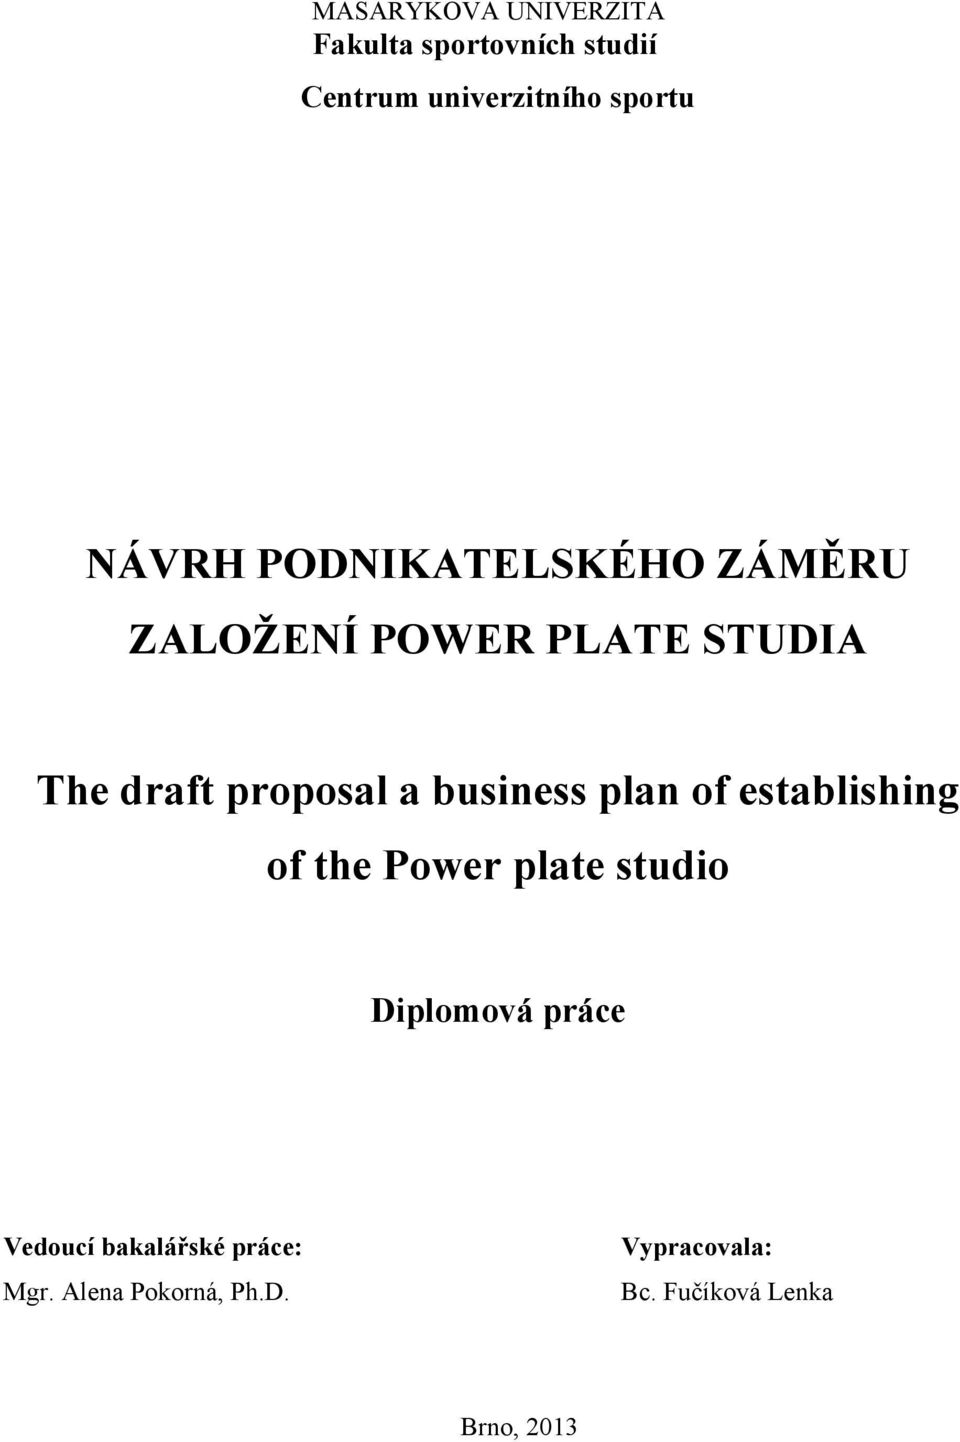 business plan of establishing of the Power plate studio Diplomová práce Vedoucí